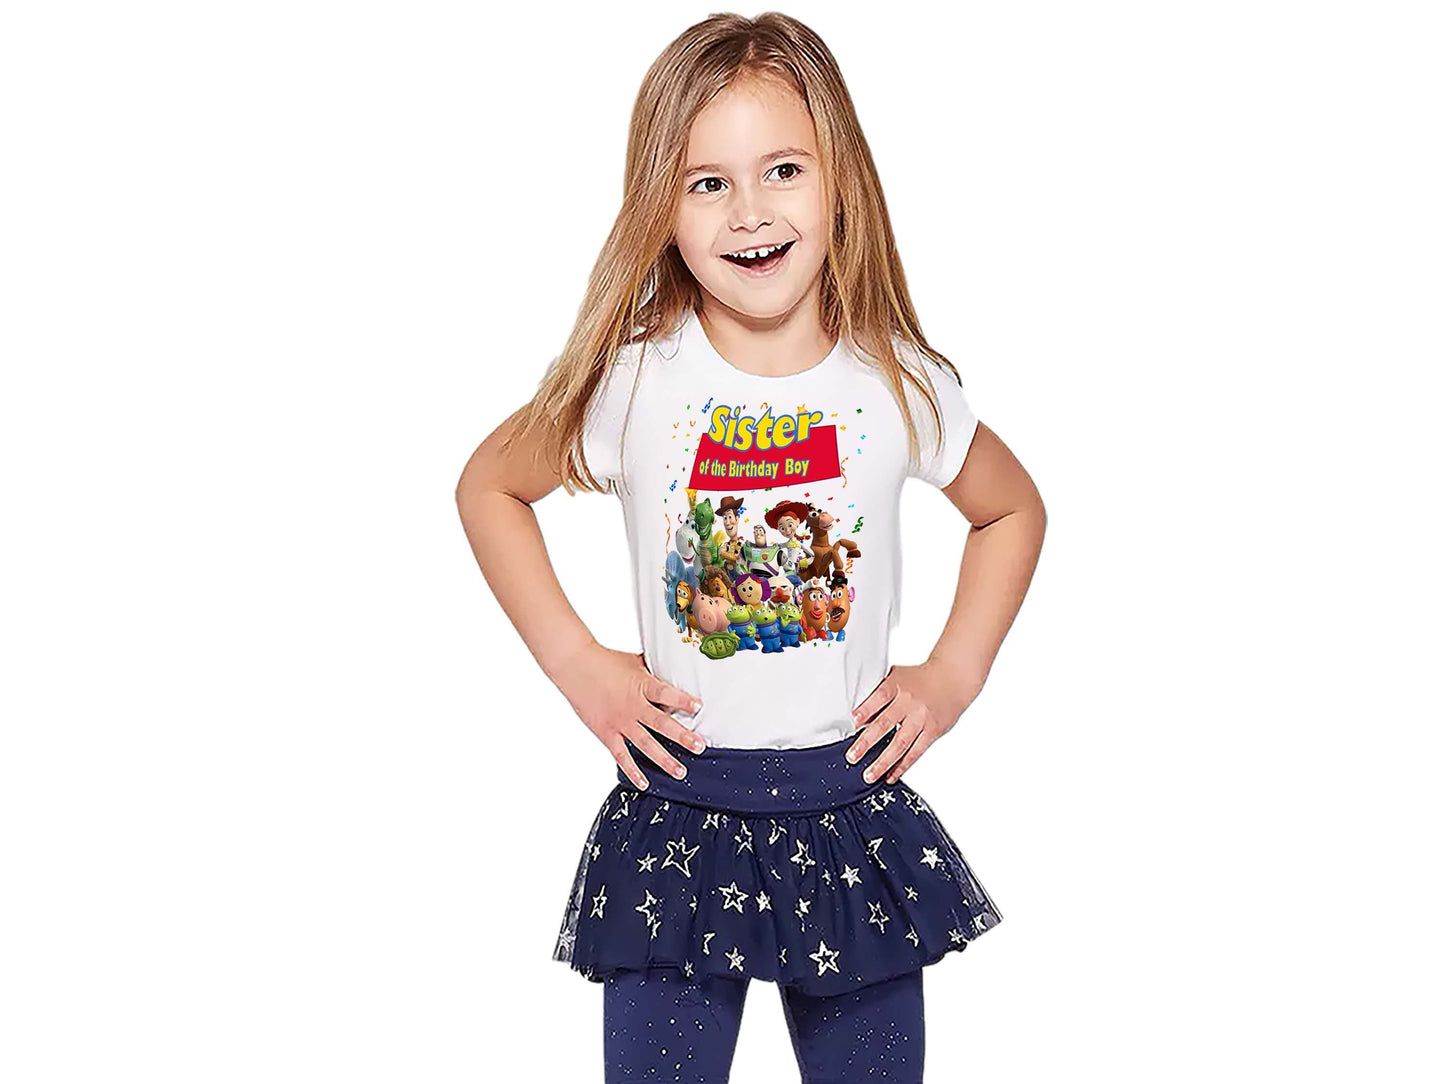 Toy Story  Family Birthday Shirts | Birthday shirts | Toy Story Shirts